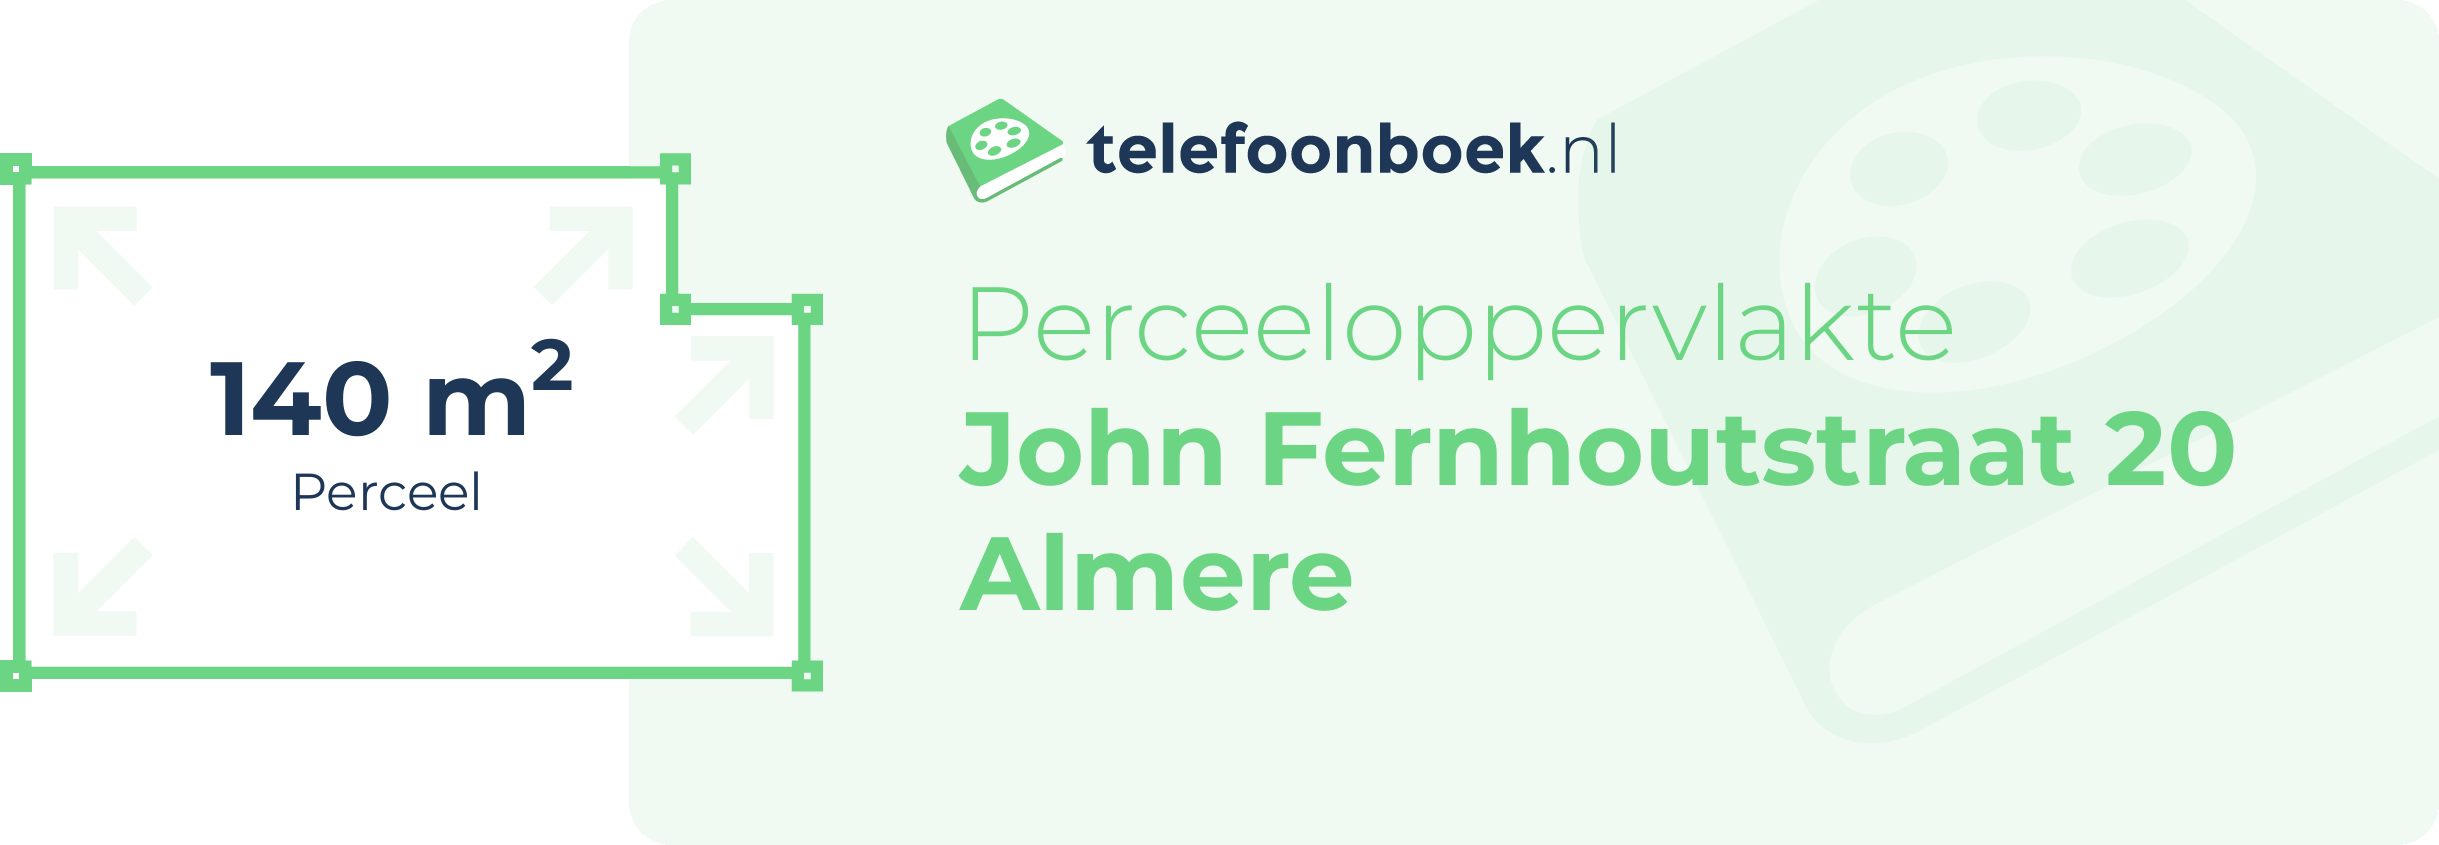 Perceeloppervlakte John Fernhoutstraat 20 Almere